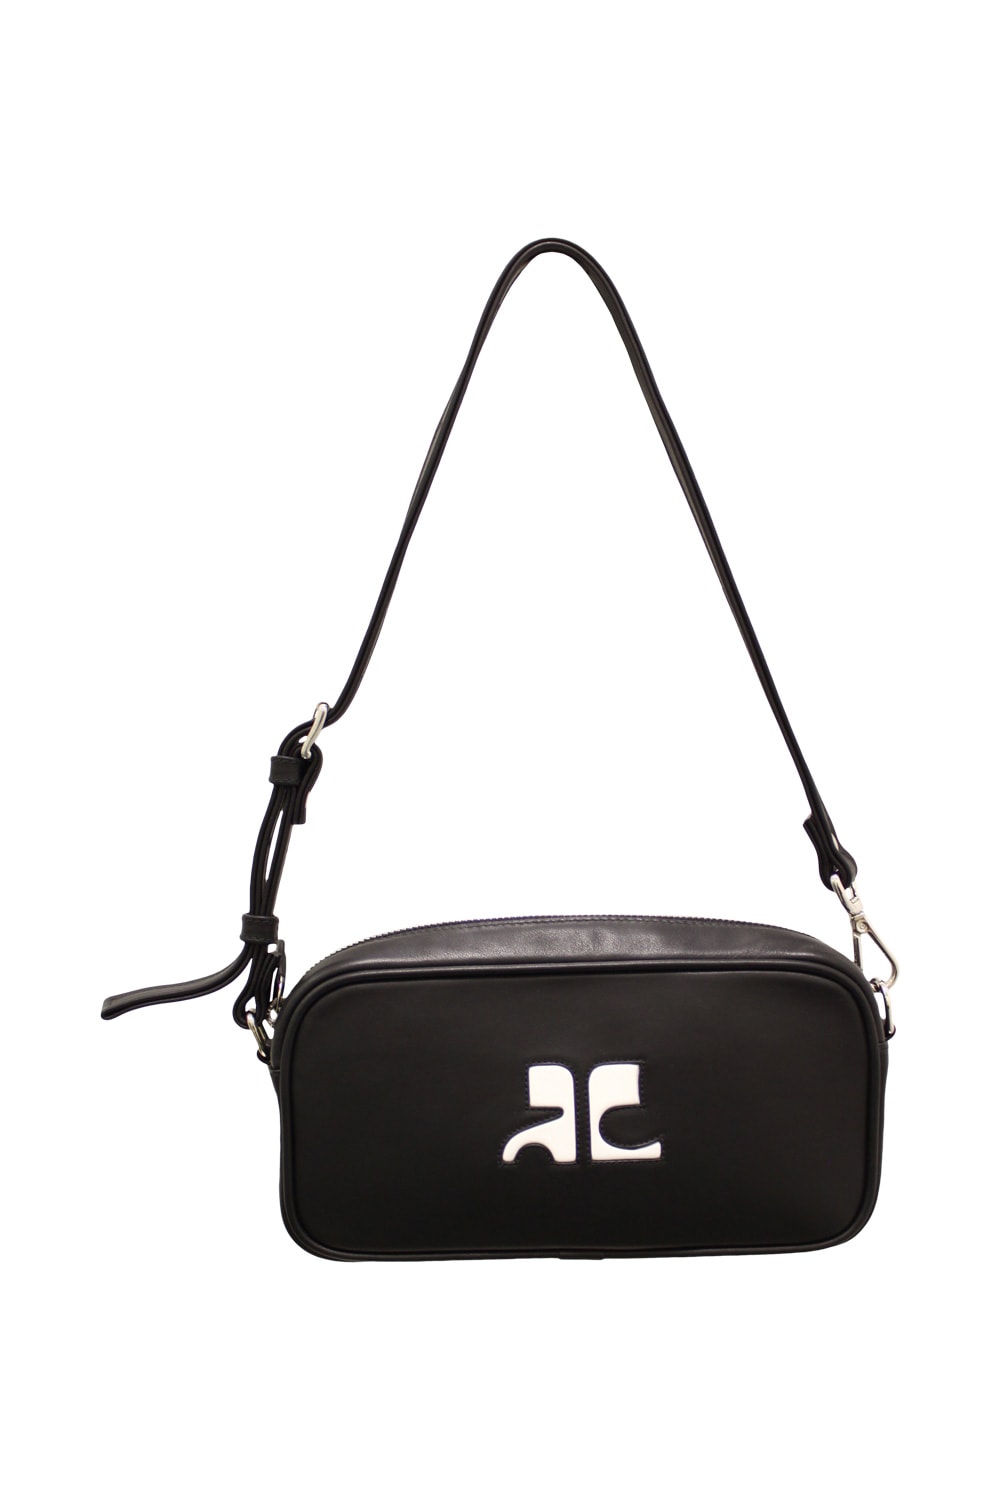 Courrèges Leather Camera Baguette Bag